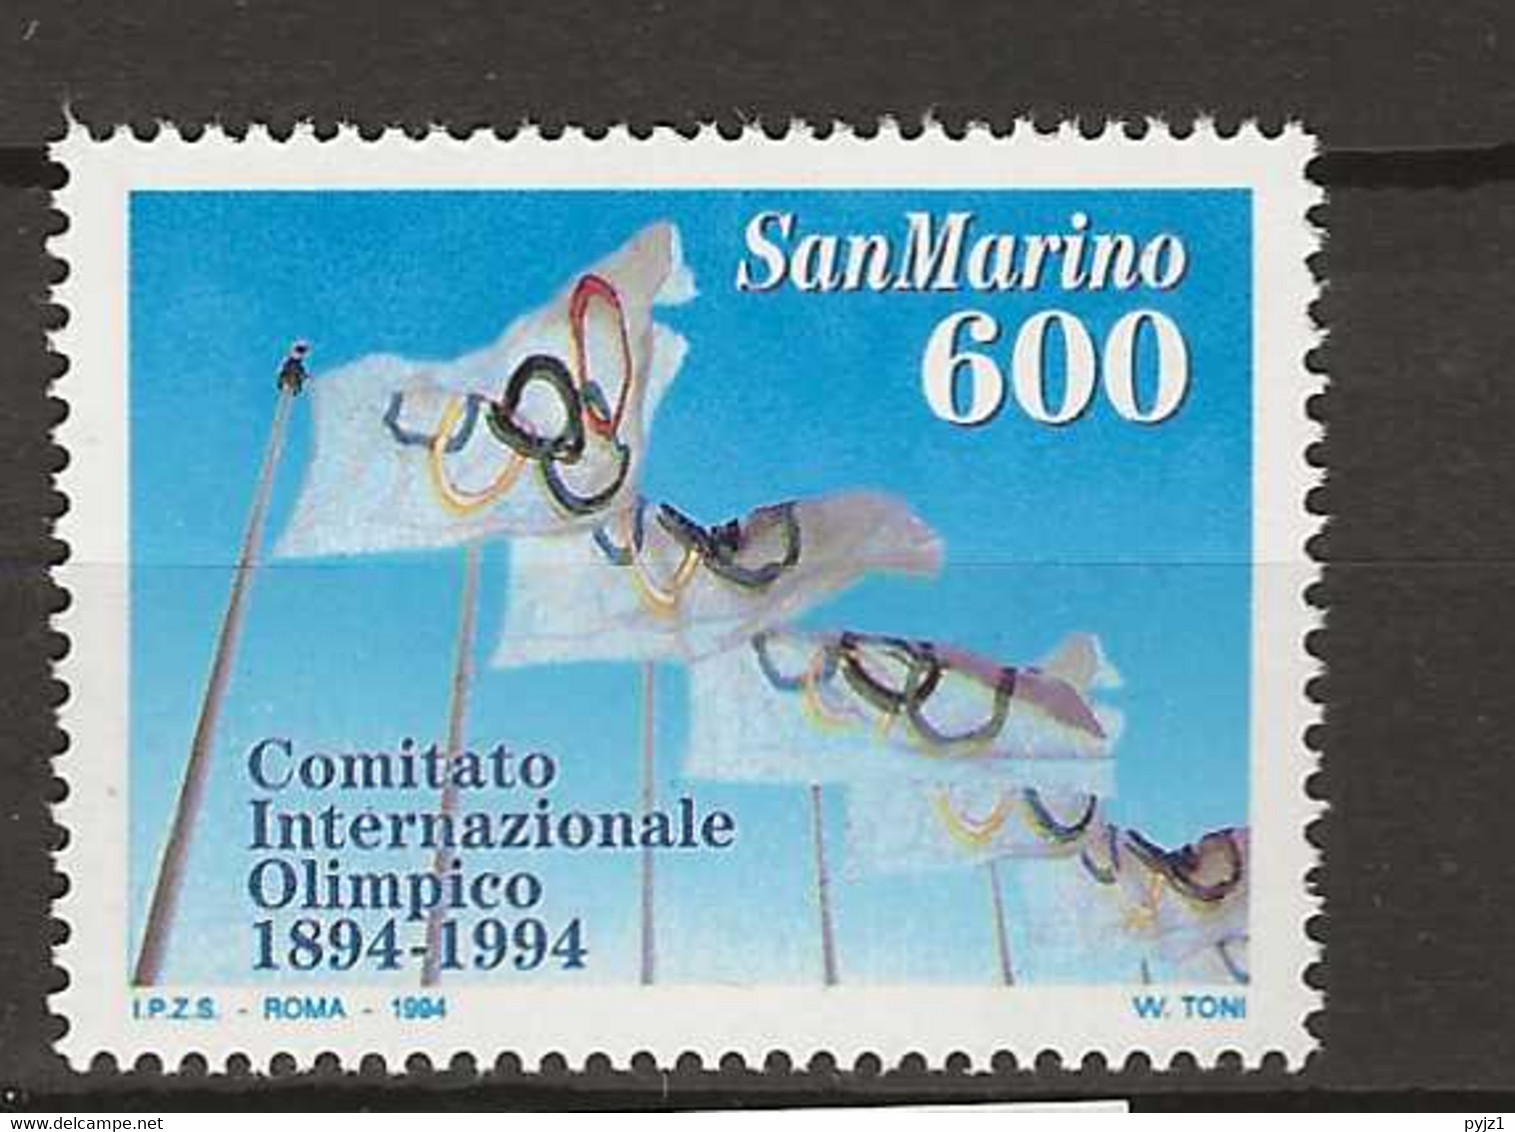 1994 MNH San Marino, Mi 1568 Postfris** - Nuevos